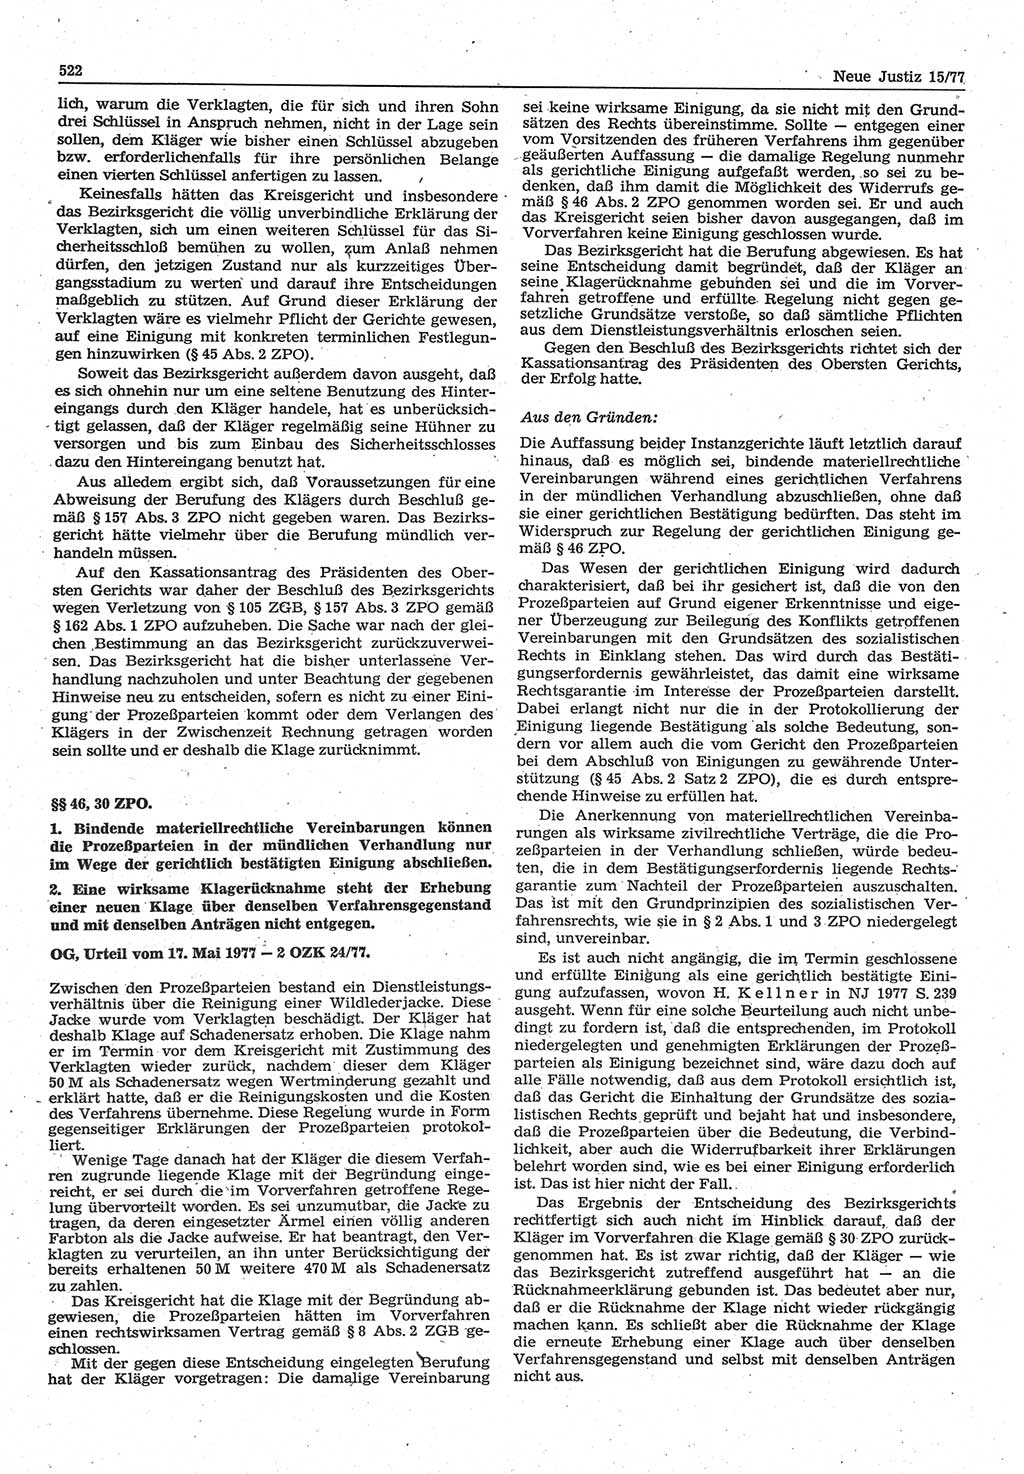 Neue Justiz (NJ), Zeitschrift für Recht und Rechtswissenschaft-Zeitschrift, sozialistisches Recht und Gesetzlichkeit, 31. Jahrgang 1977, Seite 522 (NJ DDR 1977, S. 522)